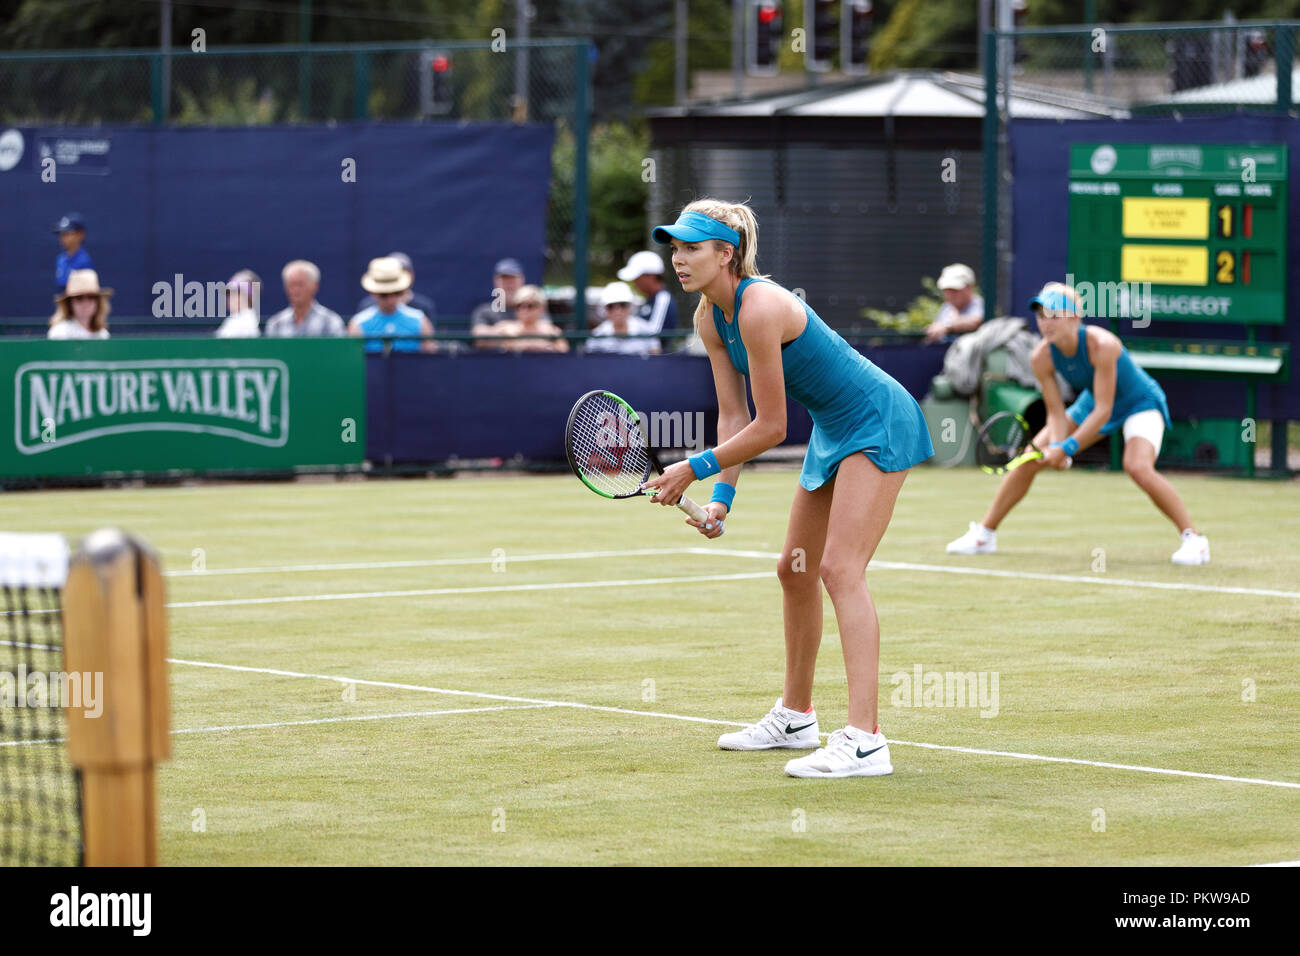 British i giocatori di tennis Katie Boulter (in primo piano) e Katie Swan (fondo) attendono il loro avversario di servire durante un doppio femminile corrispondono a un professionista di erba corte torneo nel Regno Unito. Boulter e Swan suonato insieme in corrispondenza abbigliamento. Foto Stock